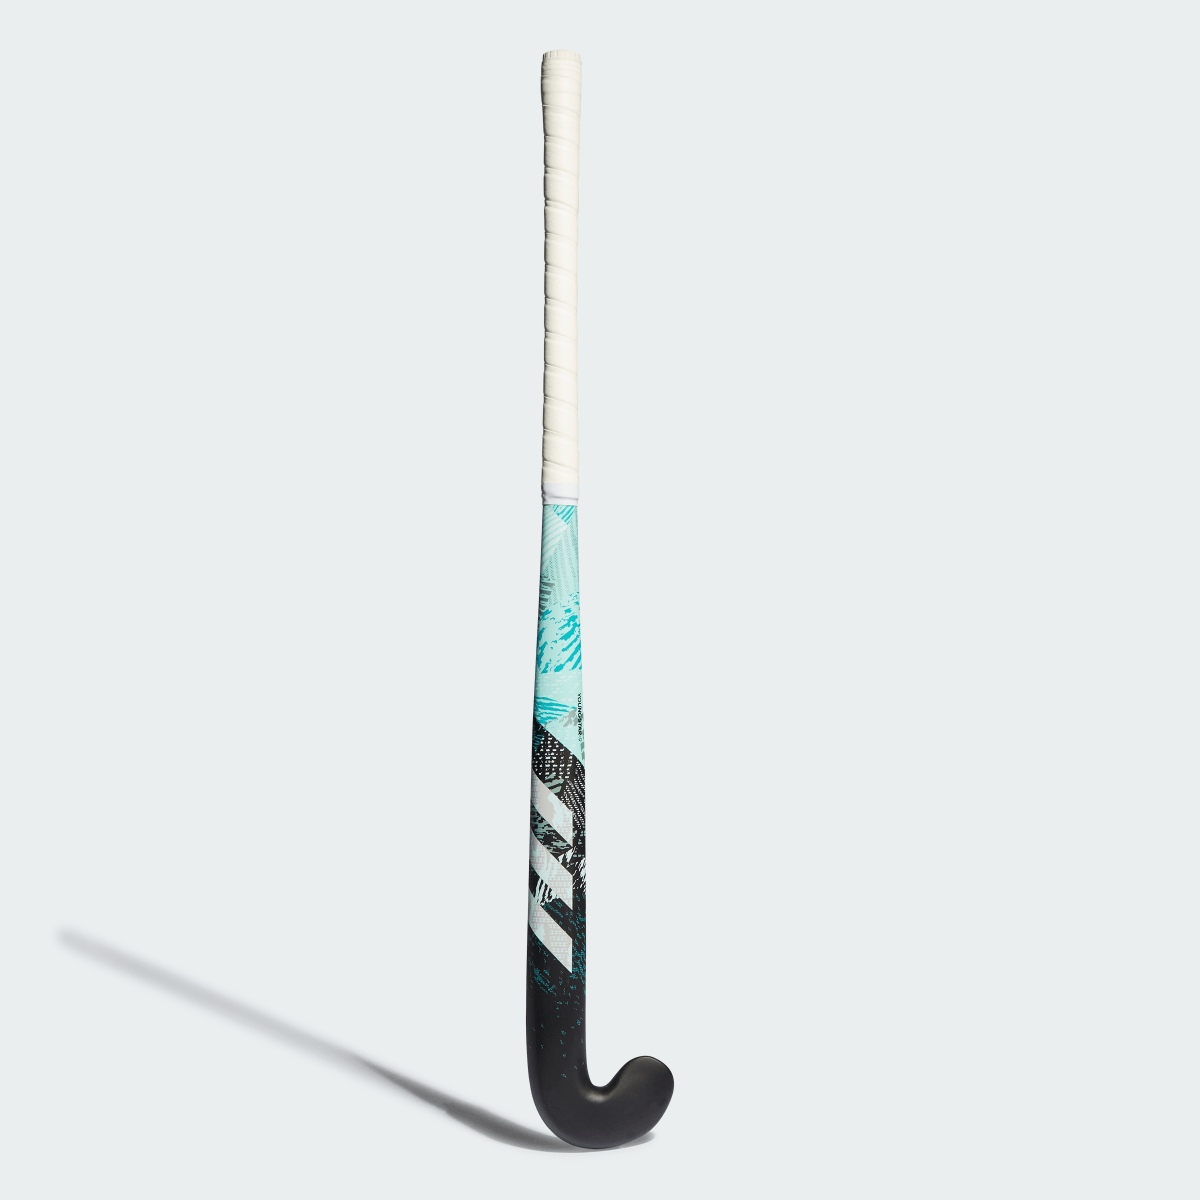 Adidas Youngstar.9 61 cm Field Hockey Stick. 1